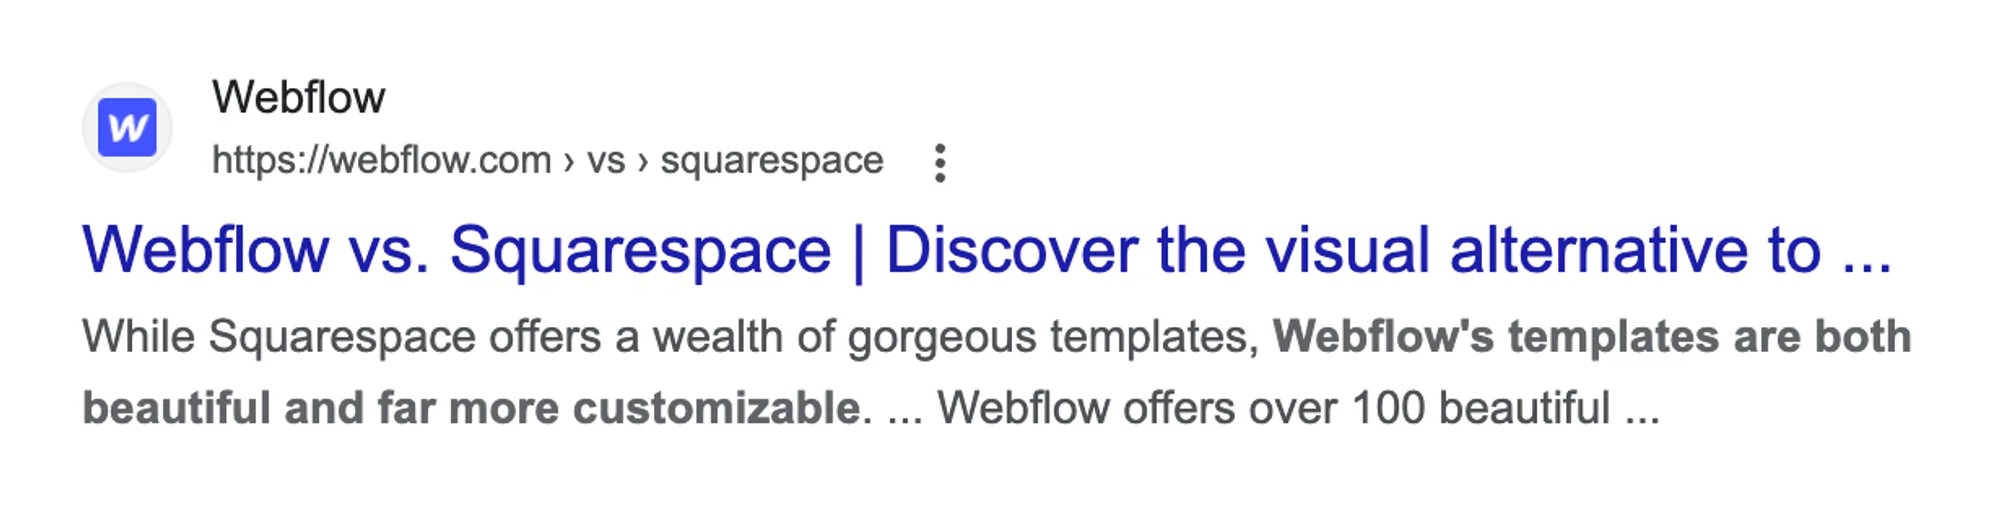 Webflow vs Squarespace programmatic landing page